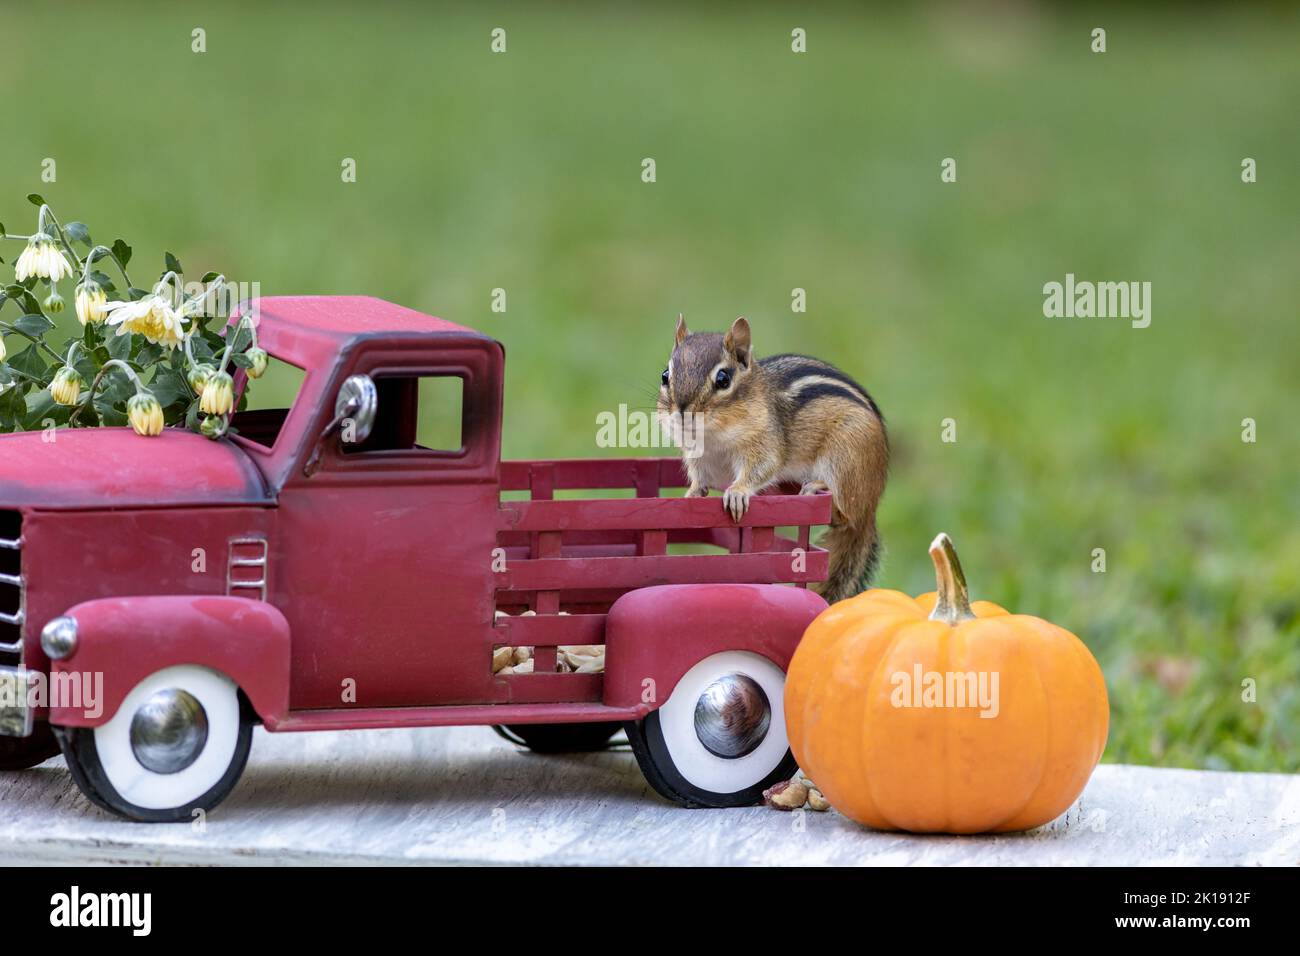 Adorabile Chipmunk orientale cerca snack in autunno scena autunnale con il classico camion rosso e zucca Foto Stock